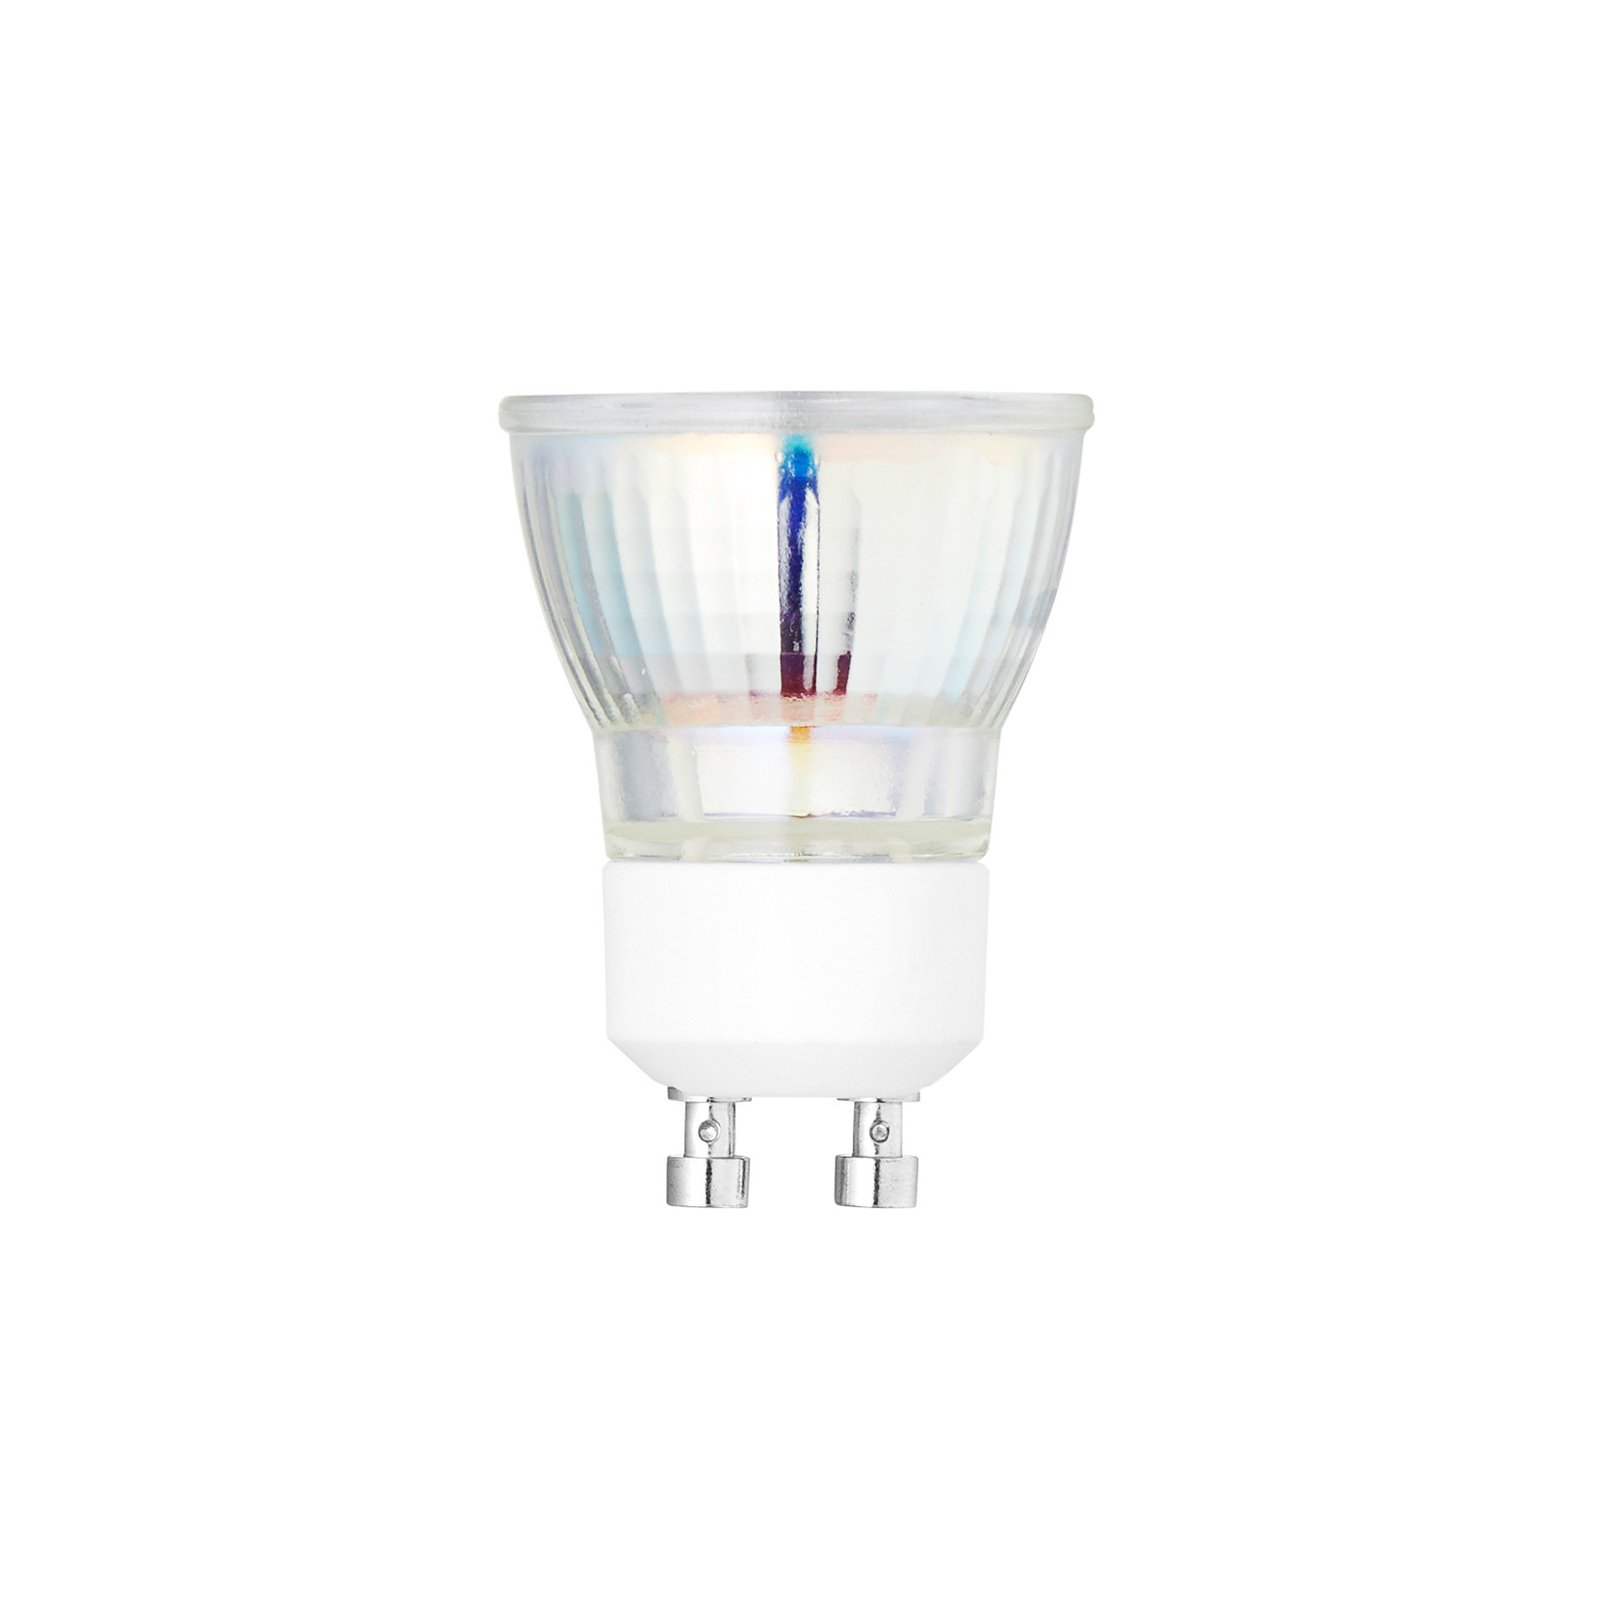 LED reflectorlamp Mini Spot, GU10, 3,5 W, 3.000 K, dimbaar